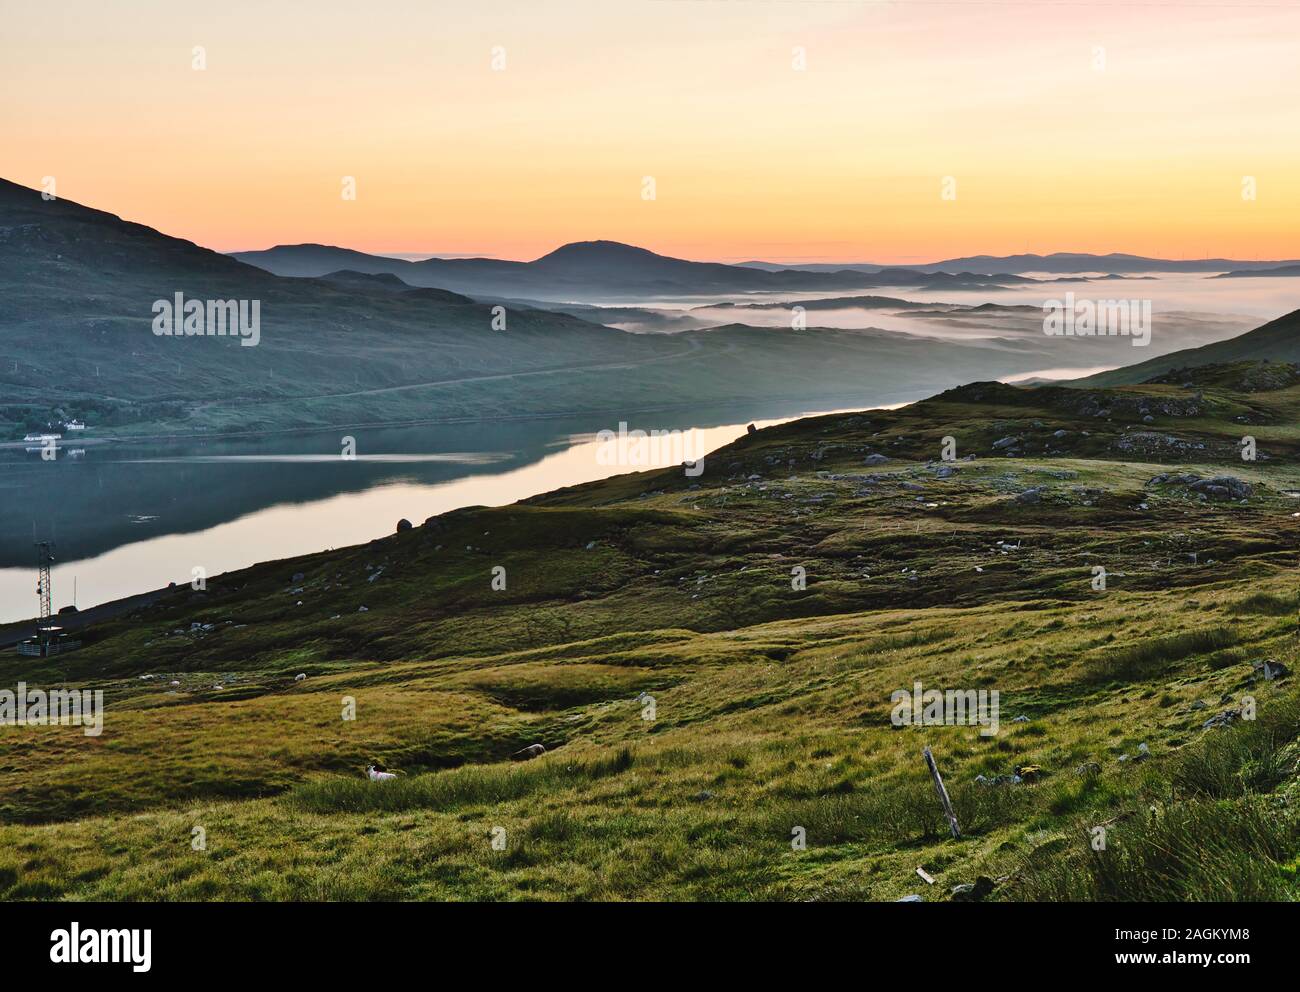 Wilde und abgelegene nebelige schottische Landschaft im Morgengrauen auf der Insel Lewis, Outer Hebrides, Schottland Stockfoto